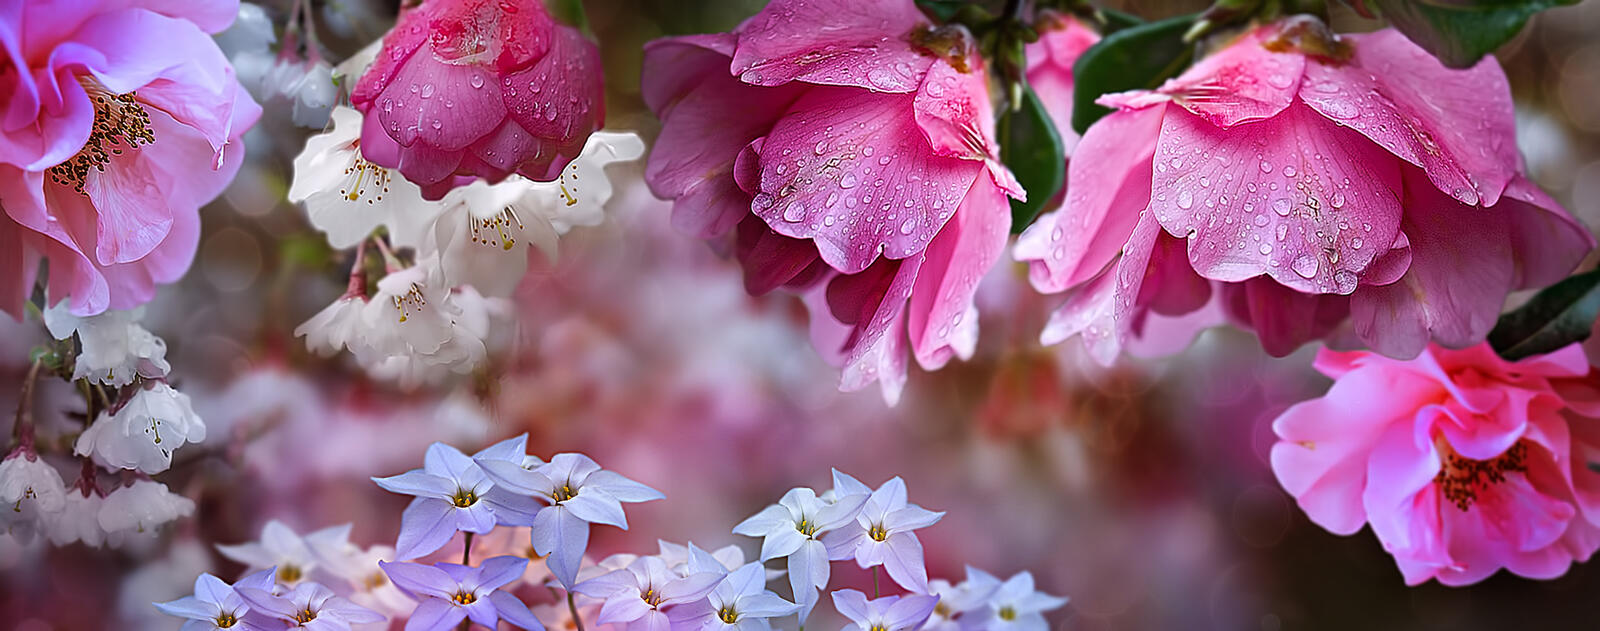 Бесплатное фото Белые и розовые цветочки